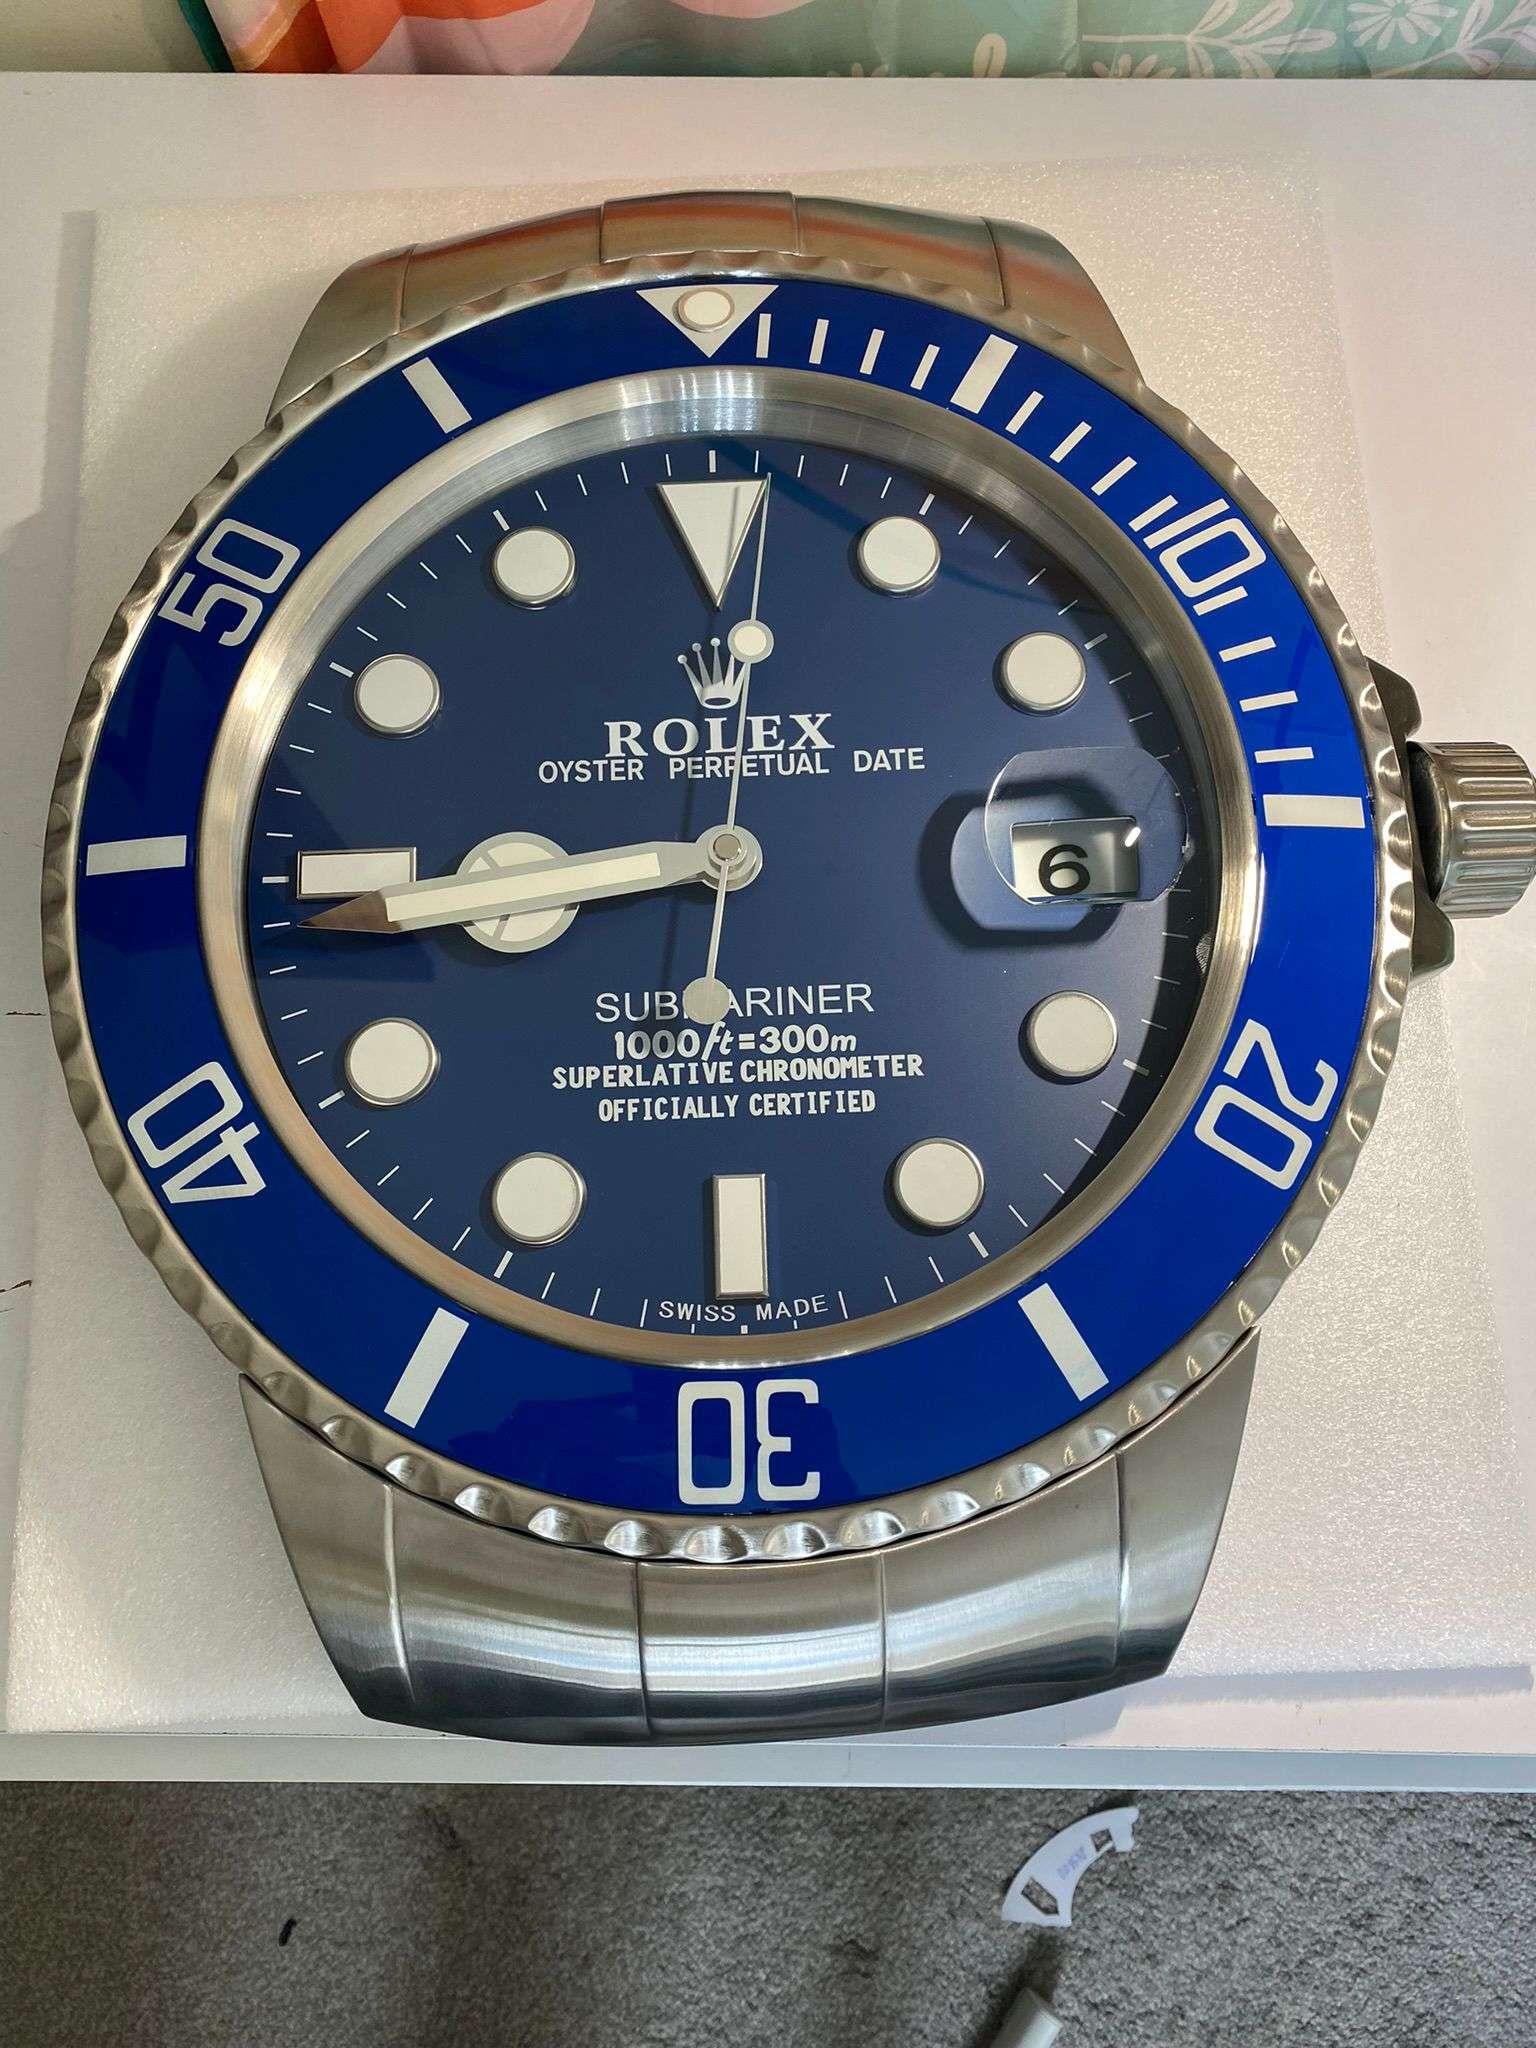 Horloge murale Oyster Perpetual Date Blue Submariner certifiée officiellement ROLEX 
Bon état, fonctionnement.
Expédition internationale gratuite.